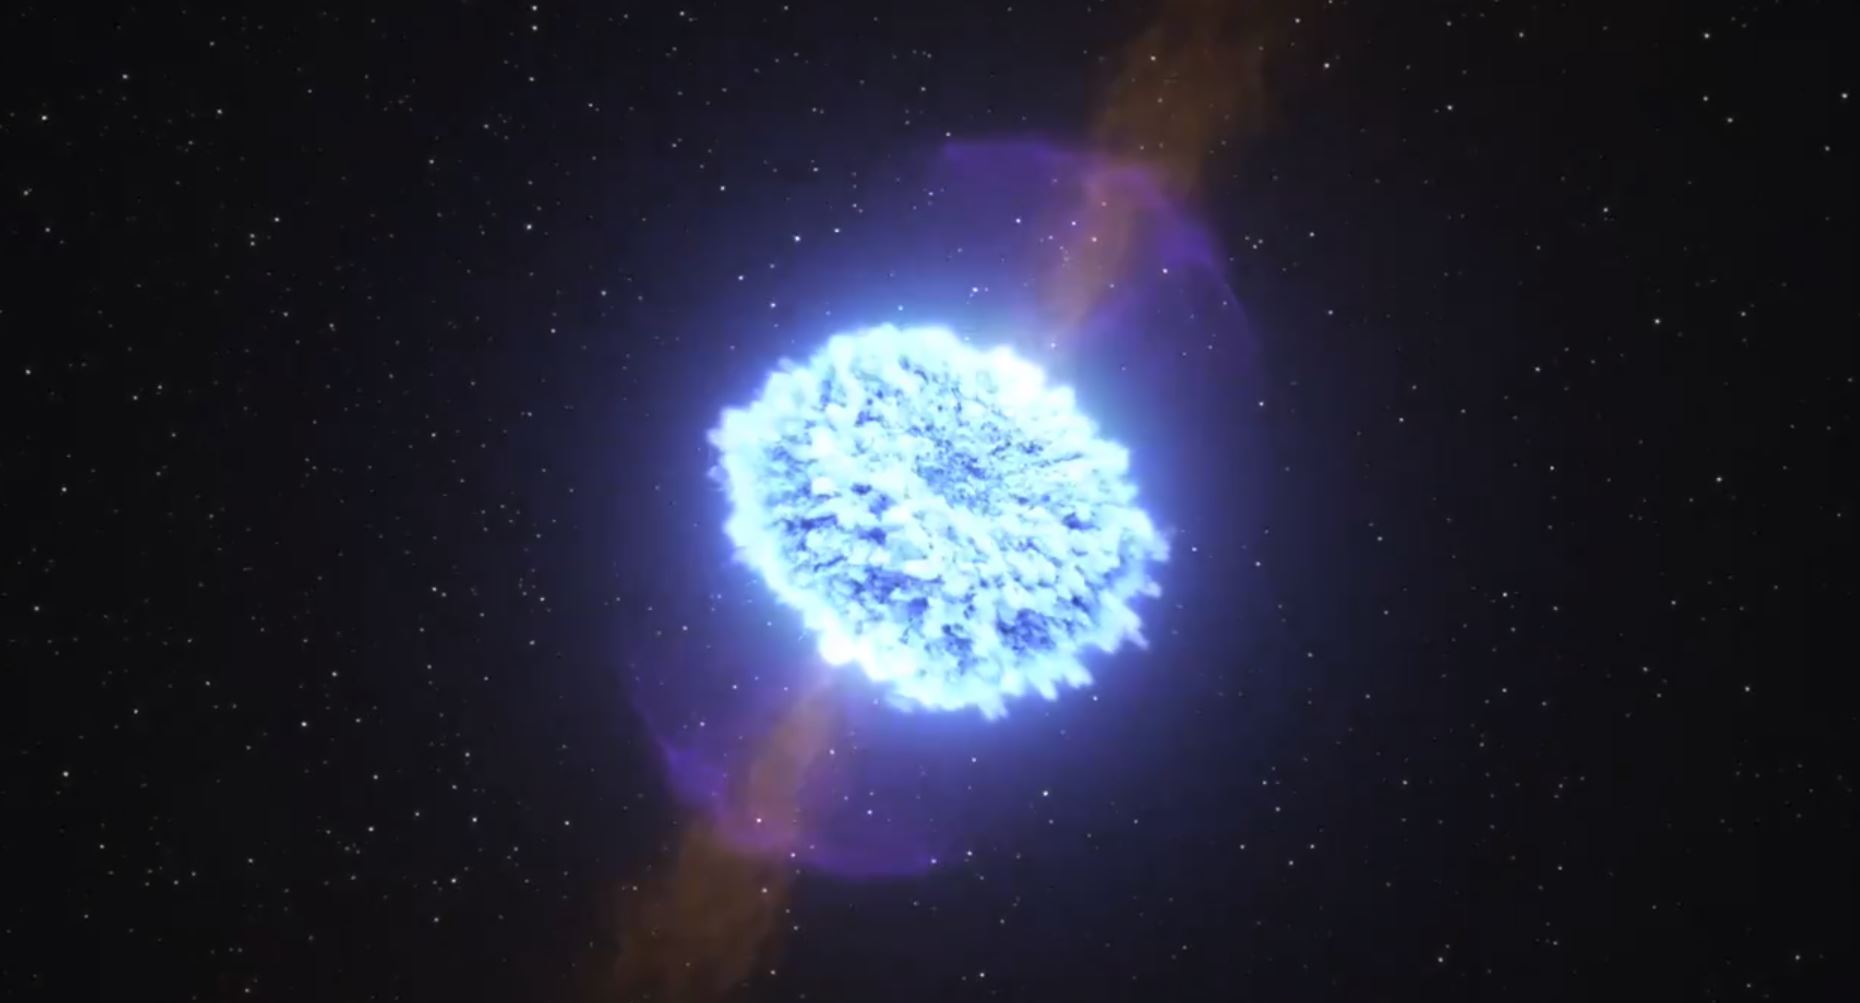 Le train d’ondes gravitationnelles observé porte la signature d’une collision de deux étoiles à neutrons, à savoir les restes du coeur d’une étoile massive après son explosion sous forme de supernova. (illustration)